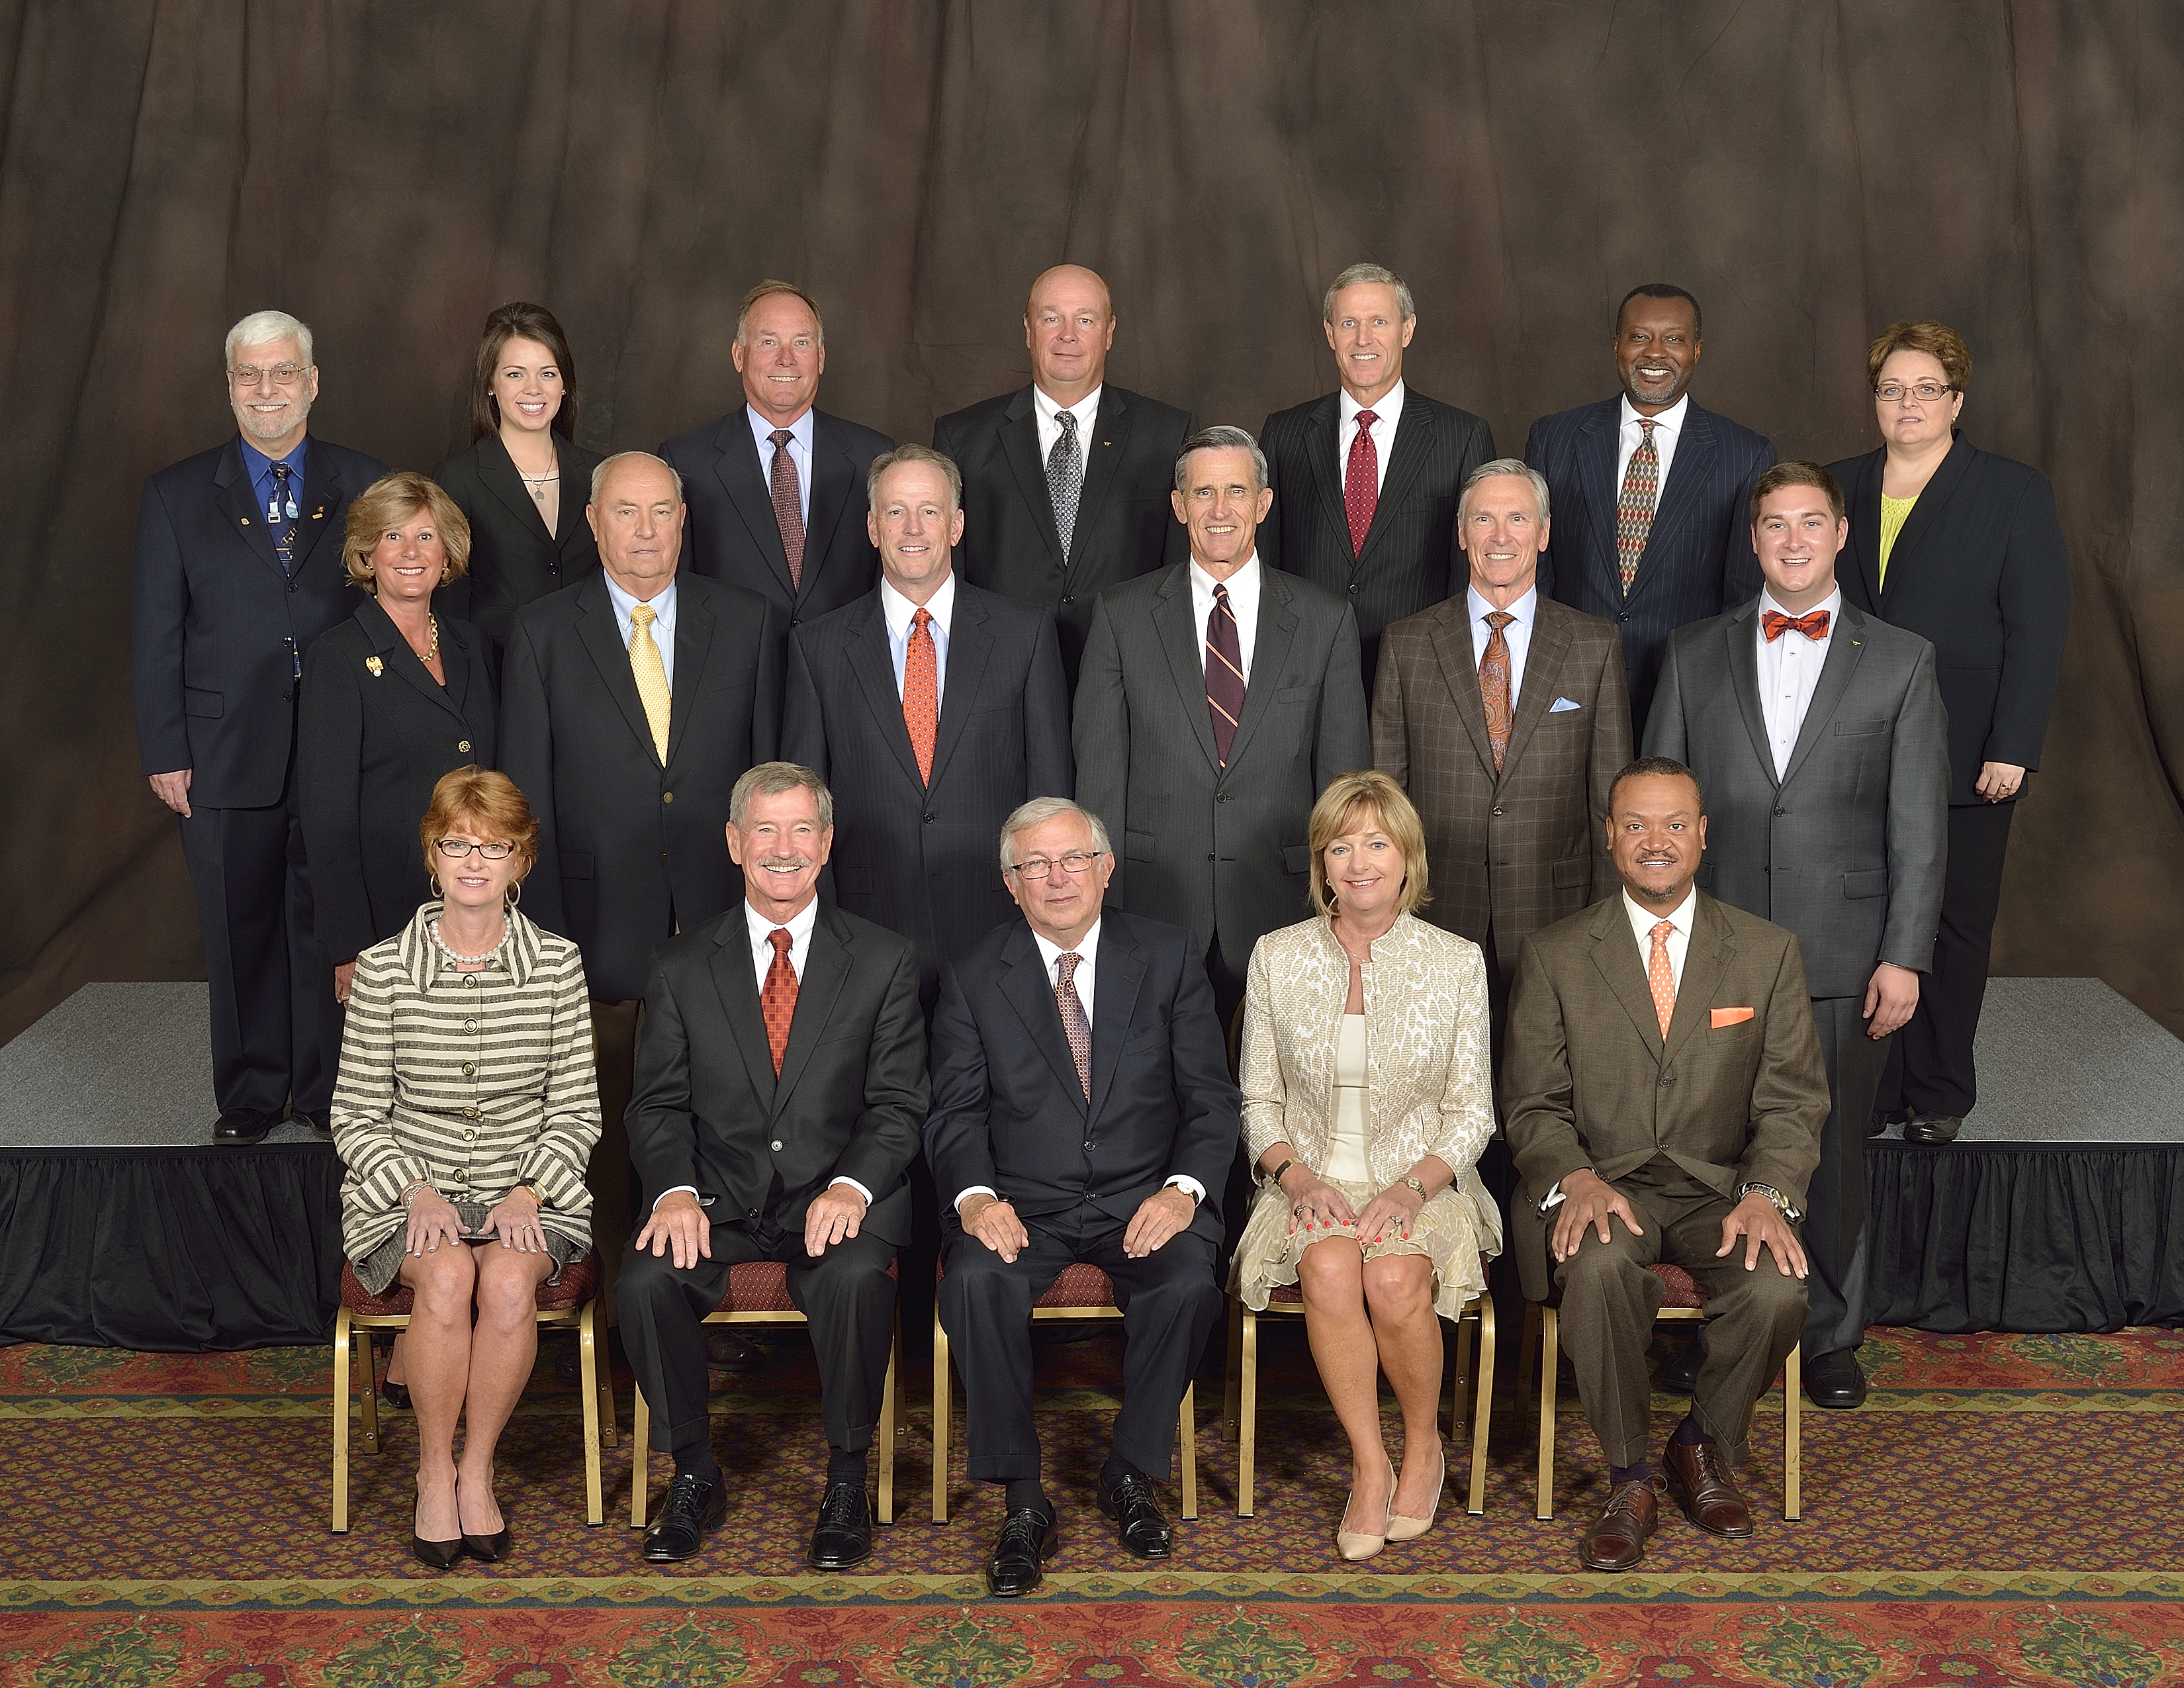 2013-14 Board of Visitors members